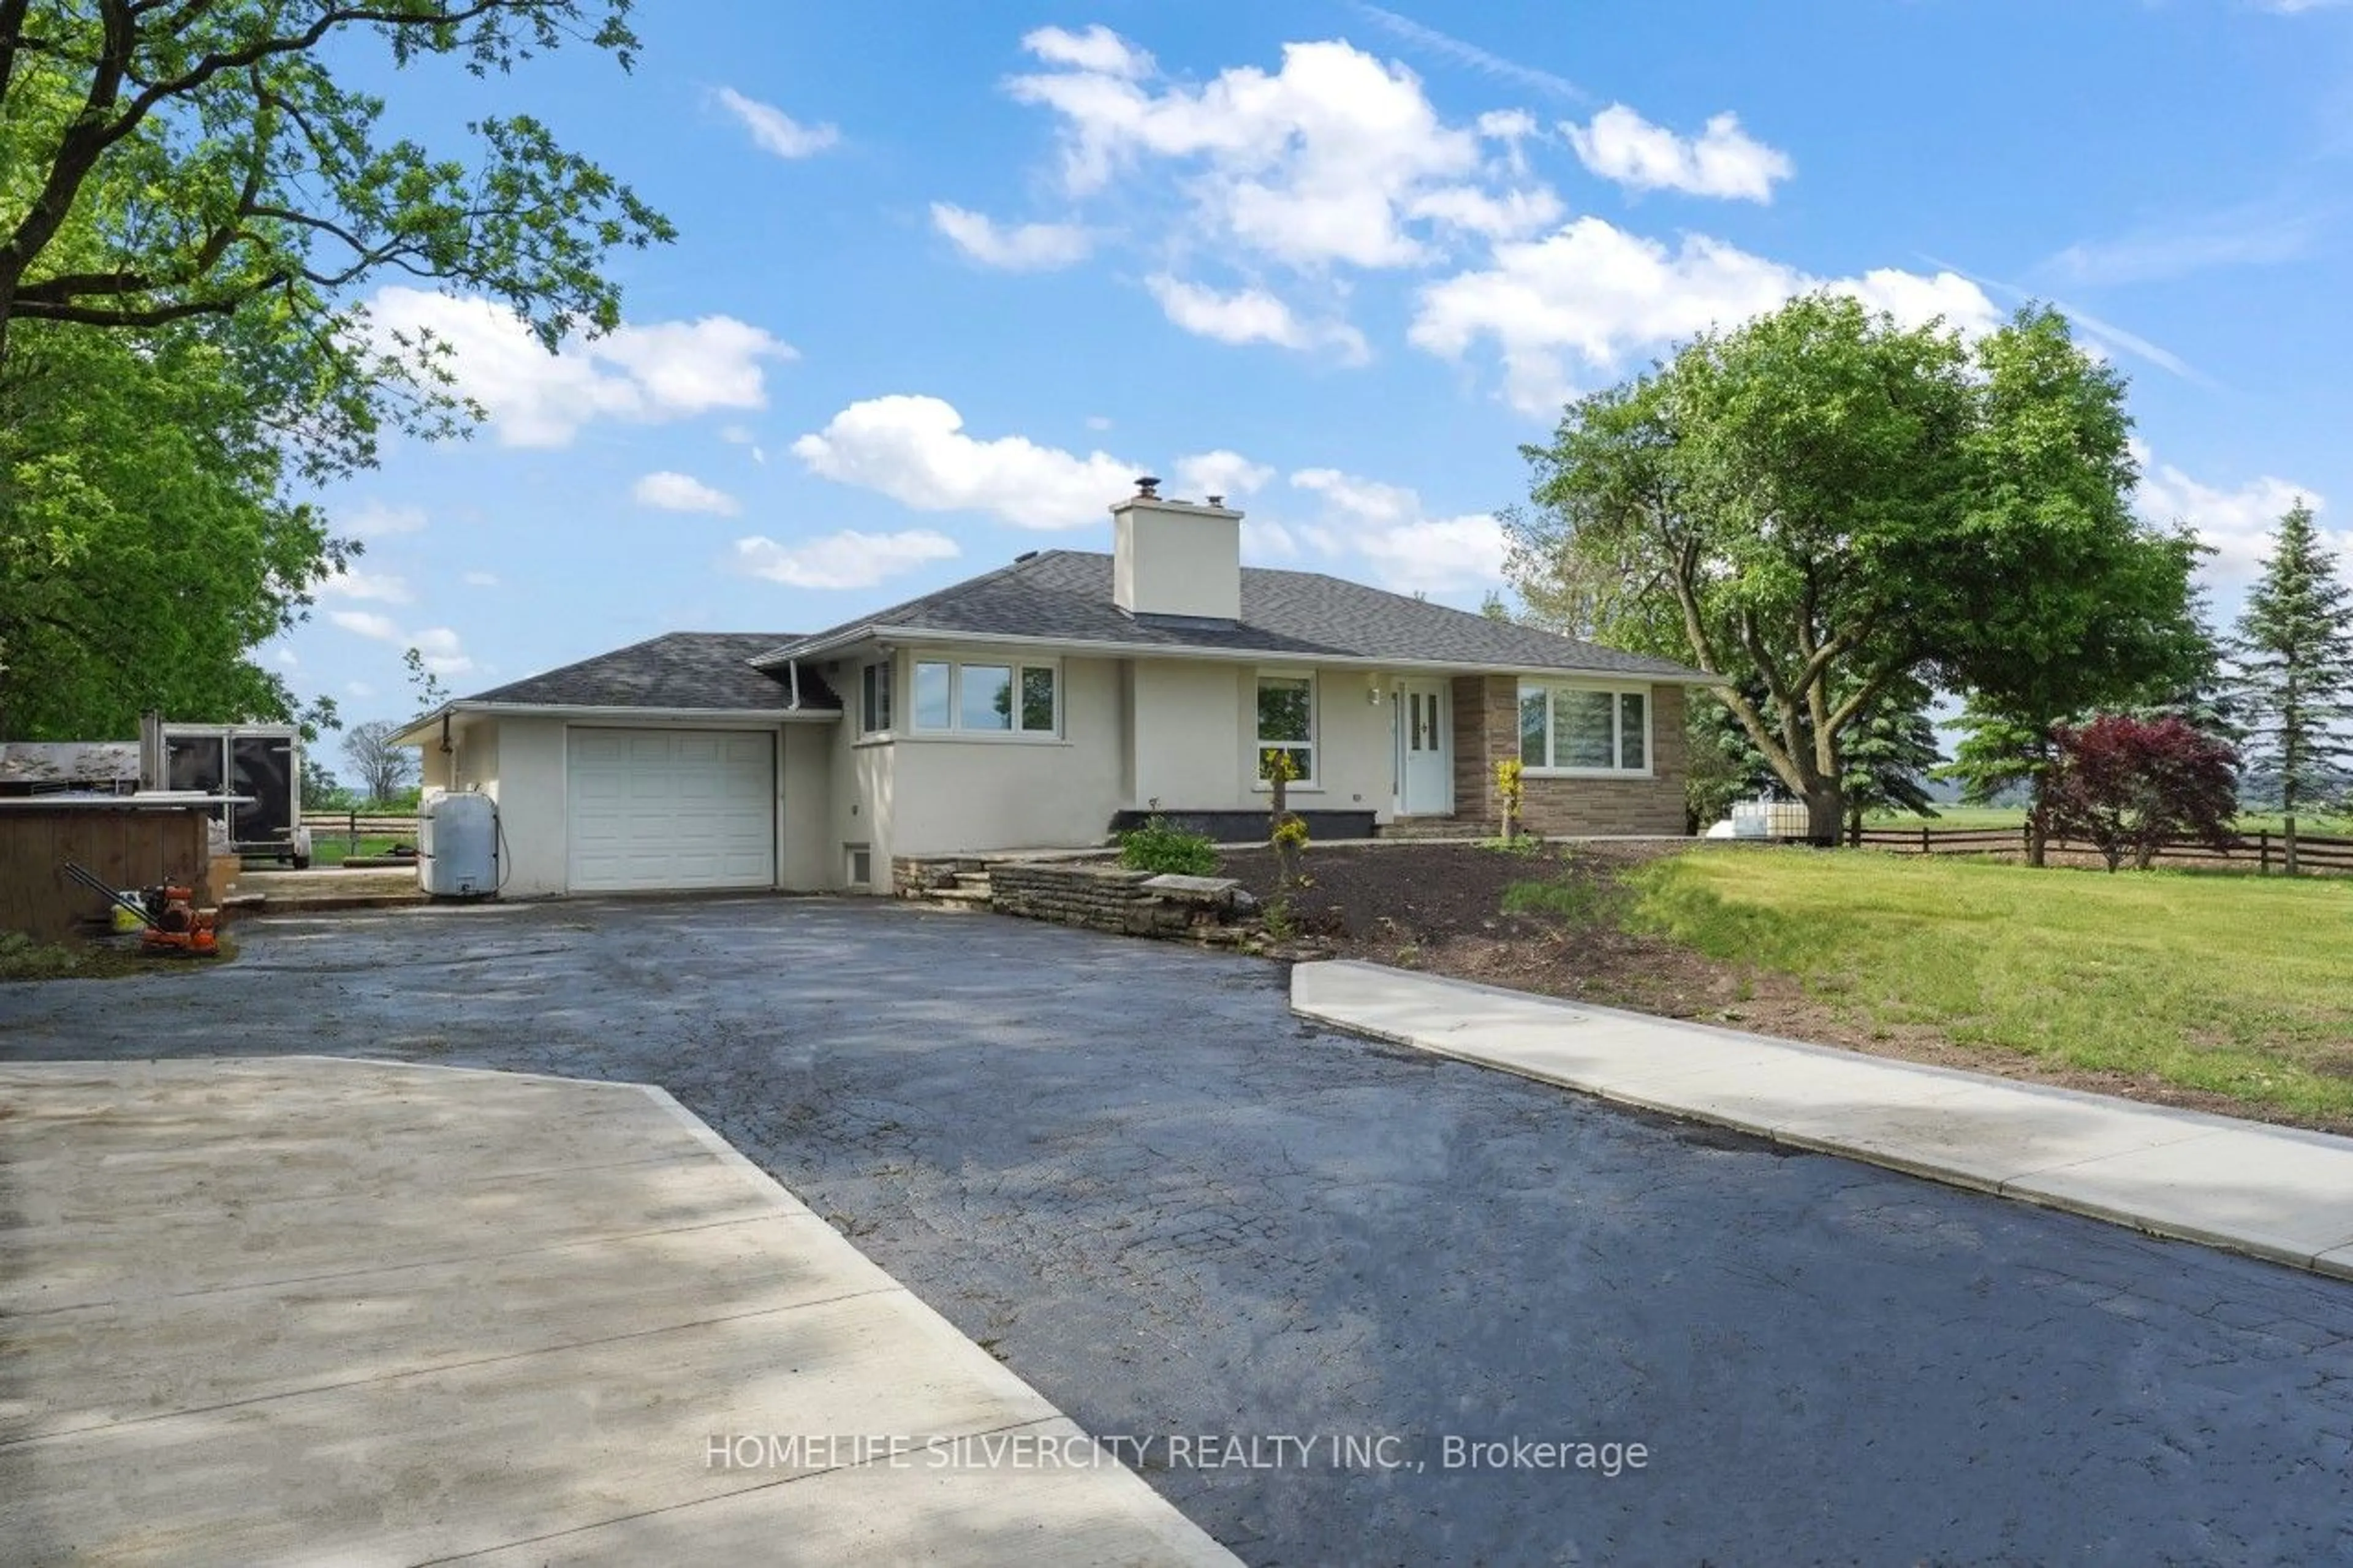 Frontside or backside of a home for 16817 22 Side Rd Sdrd, Halton Hills Ontario L7G 4S8